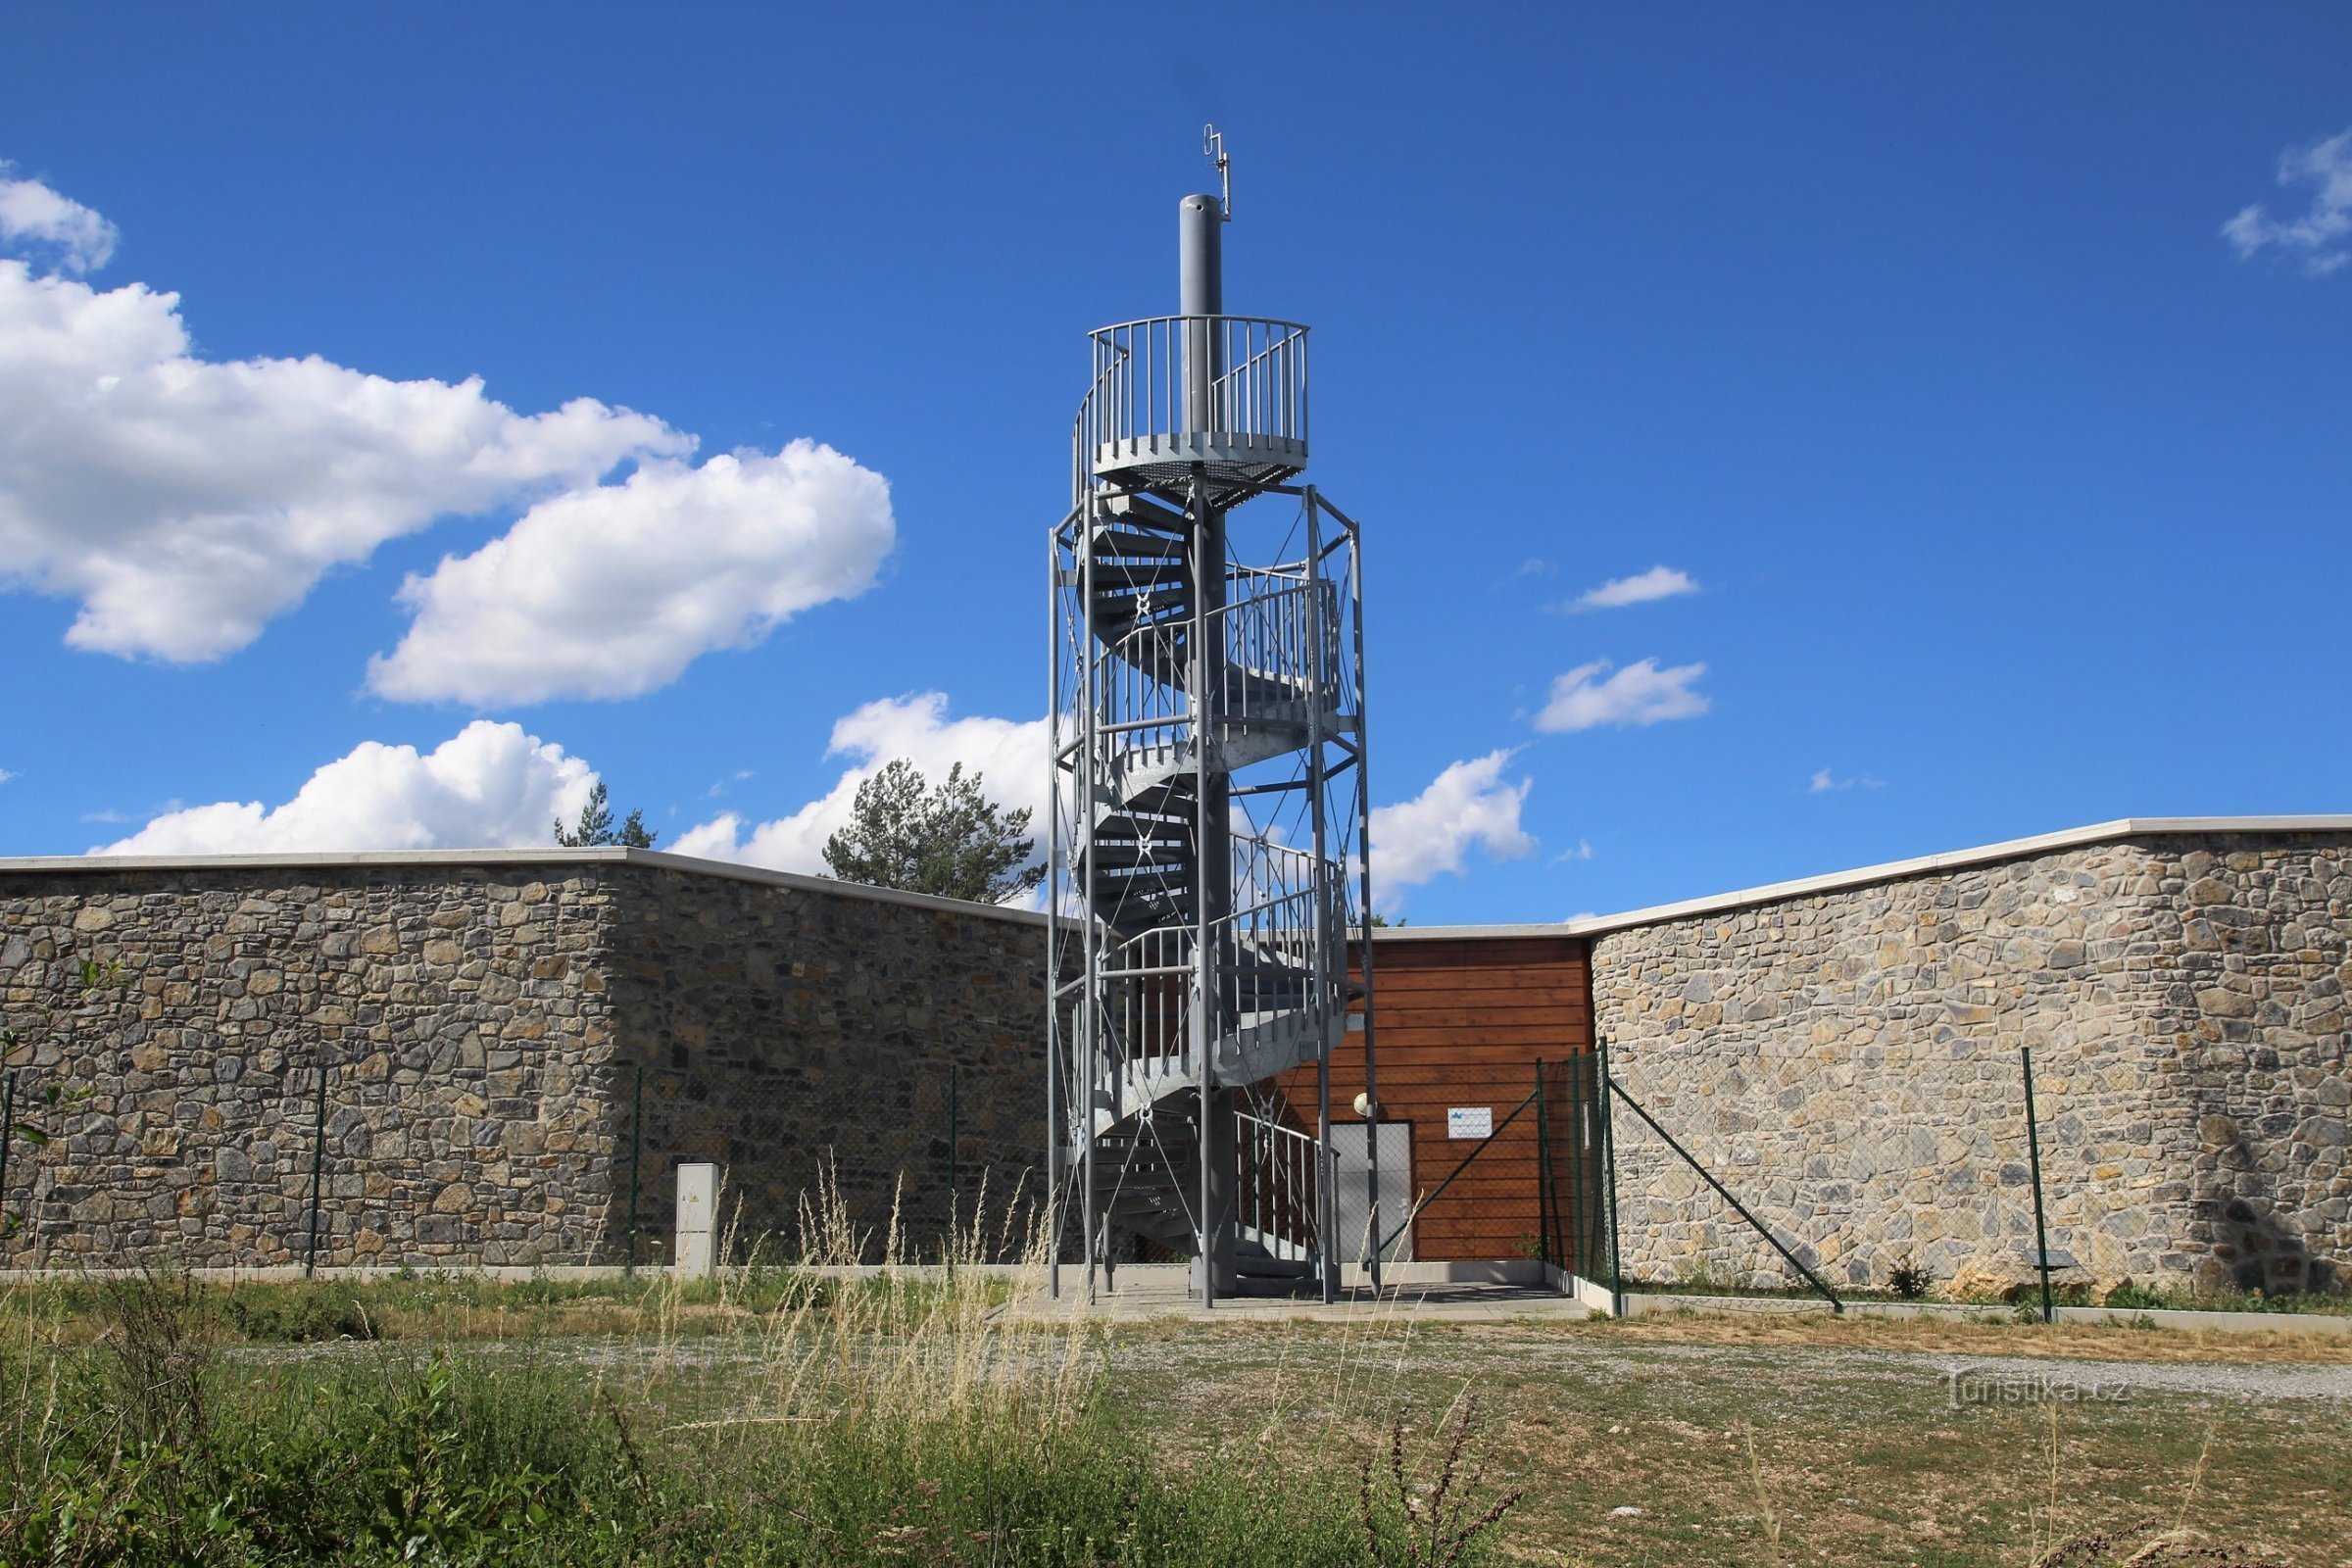 Wieża widokowa Mokerská znajduje się na szczycie wzgórza nad wioską na dziedzińcu tutejszego zbiornika wodnego